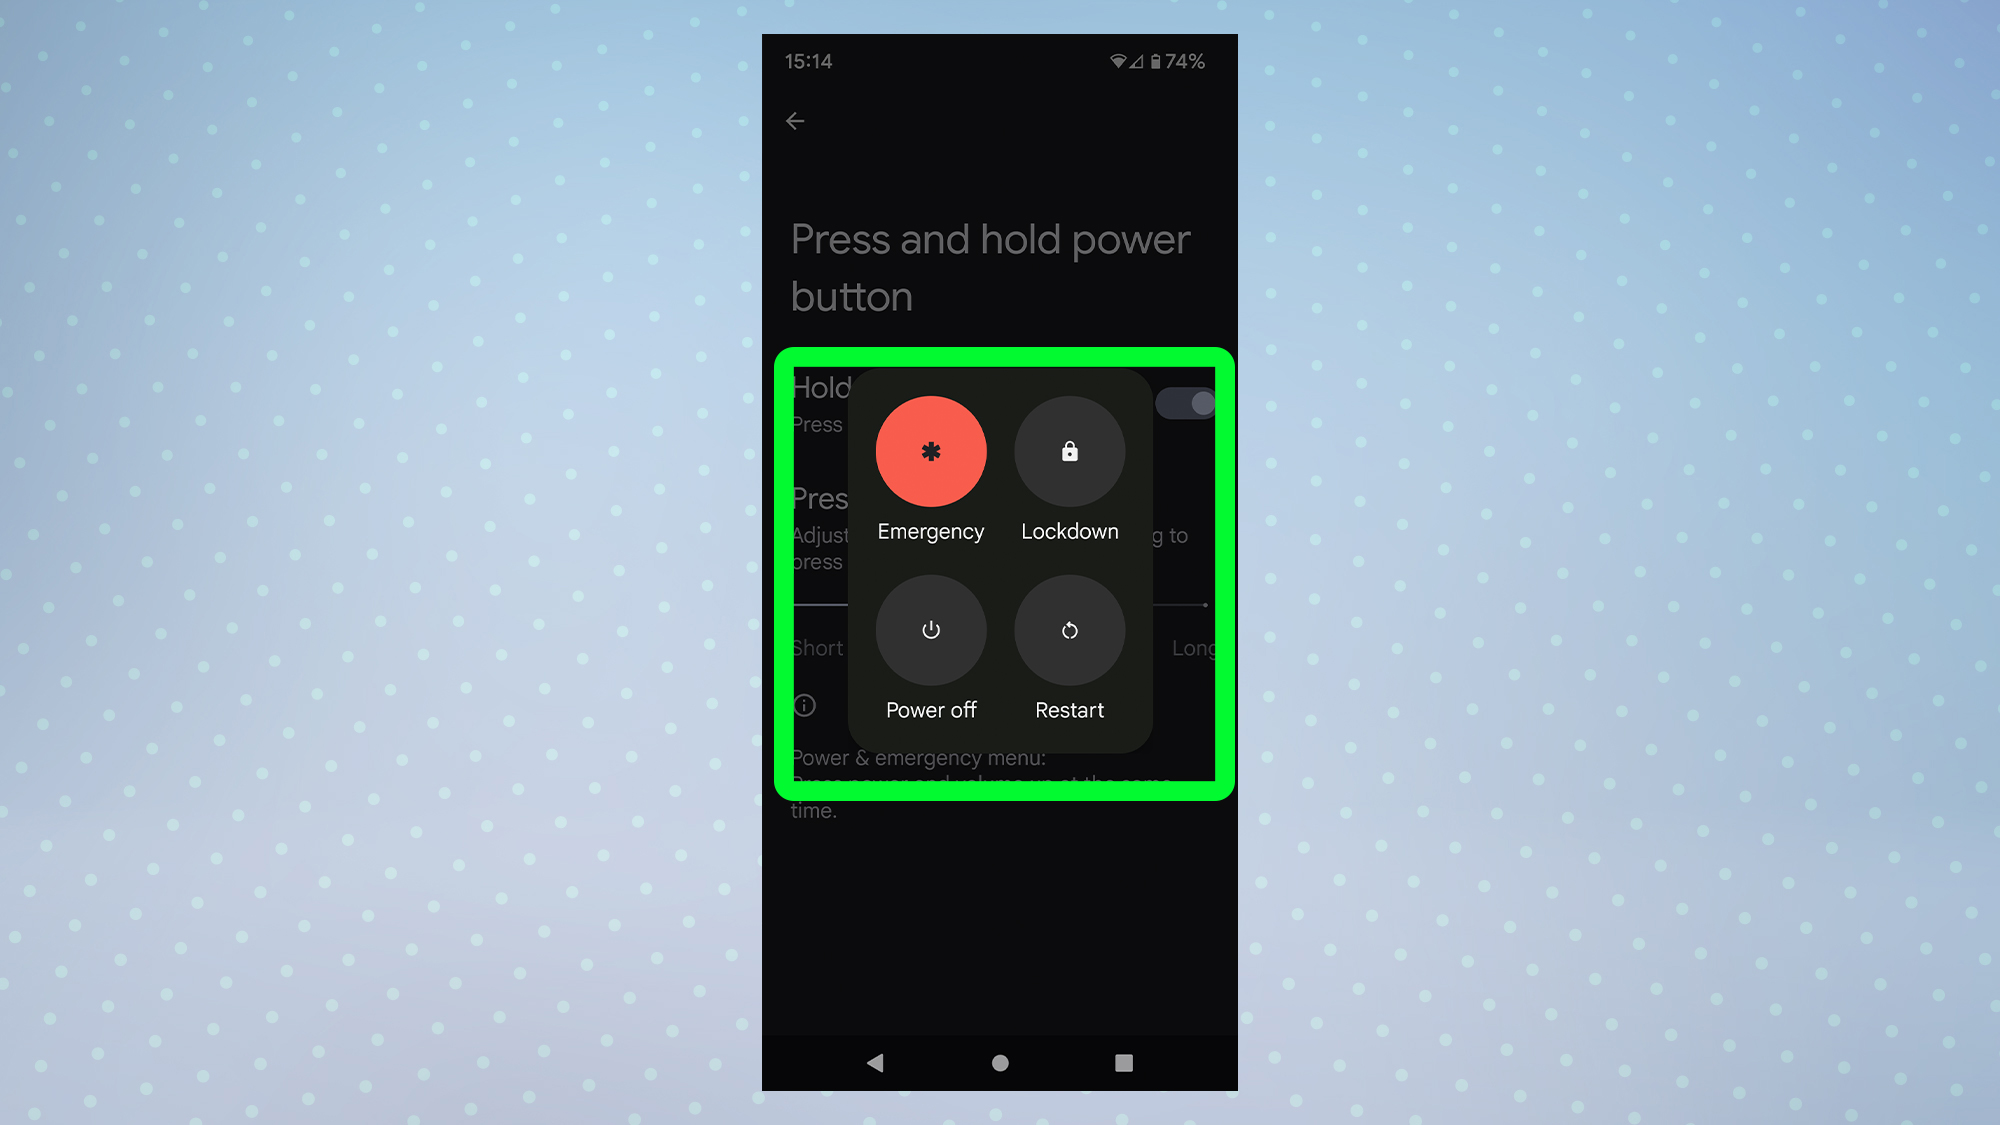 Снимок экрана с Android 12, показывающий меню отключения питания